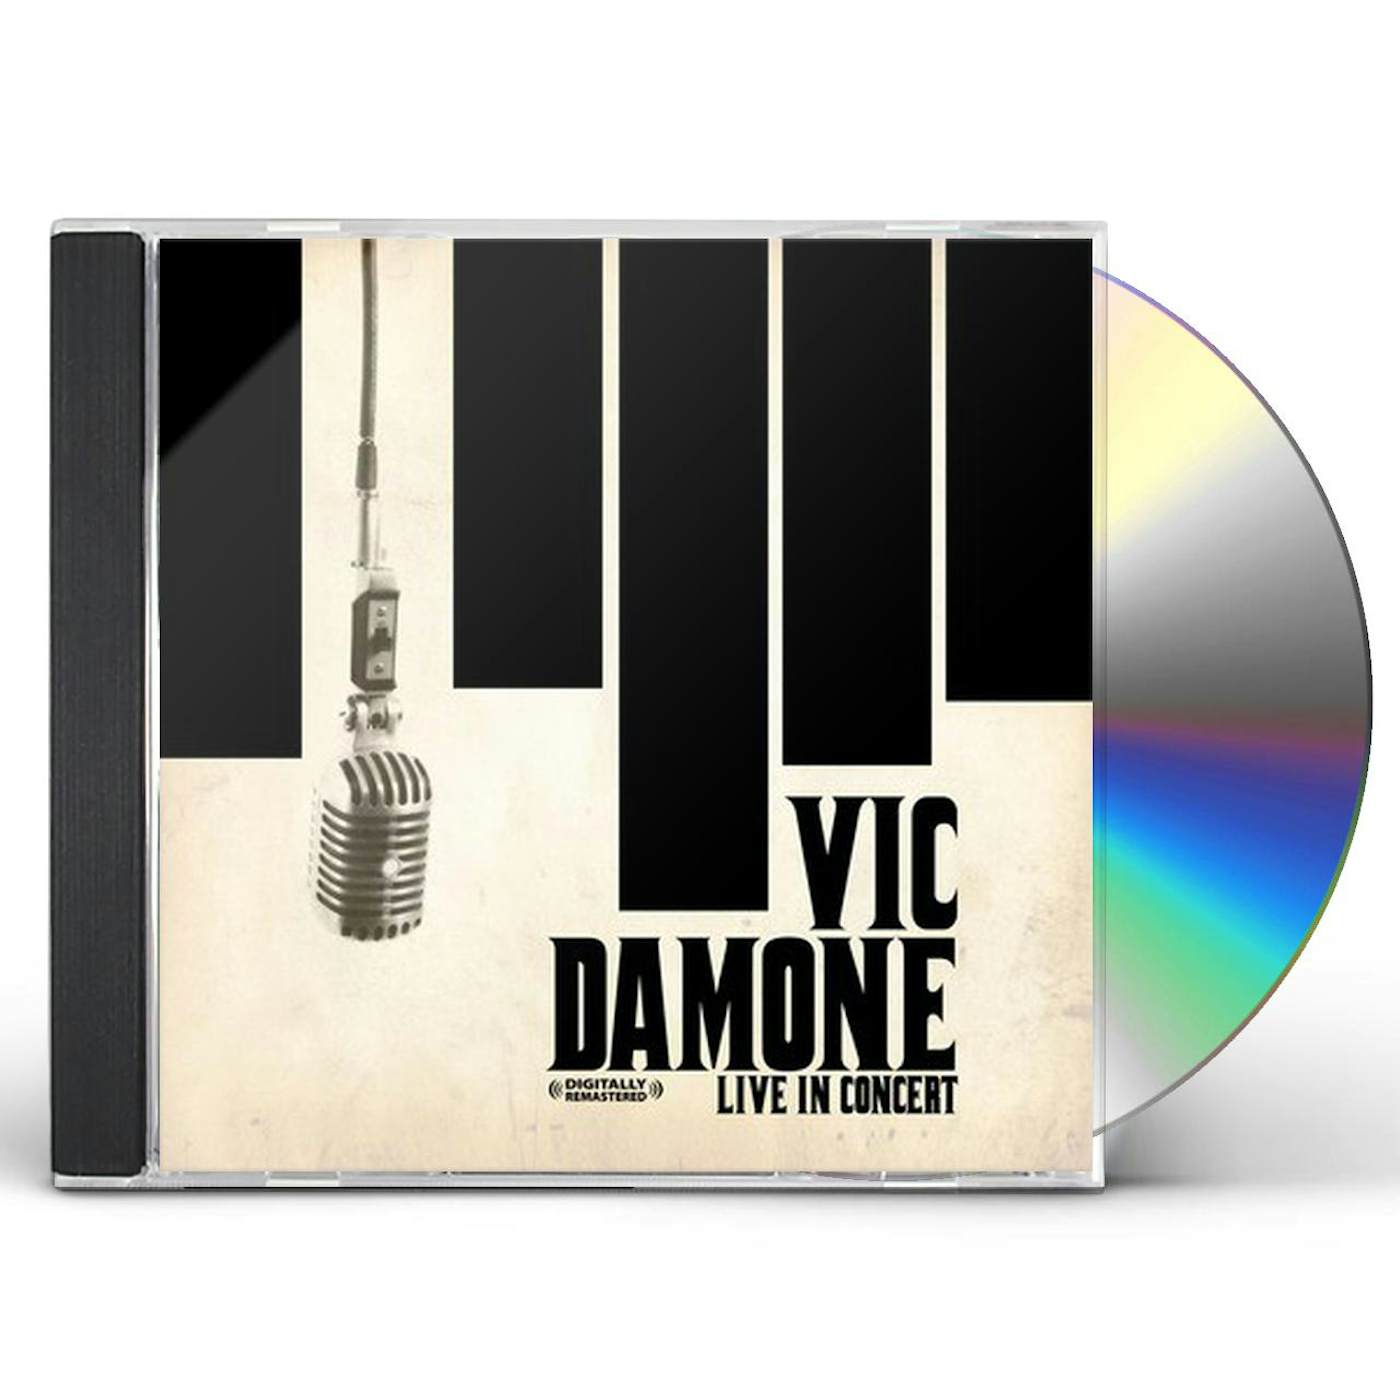 Vic Damone LIVE IN CONCERT CD